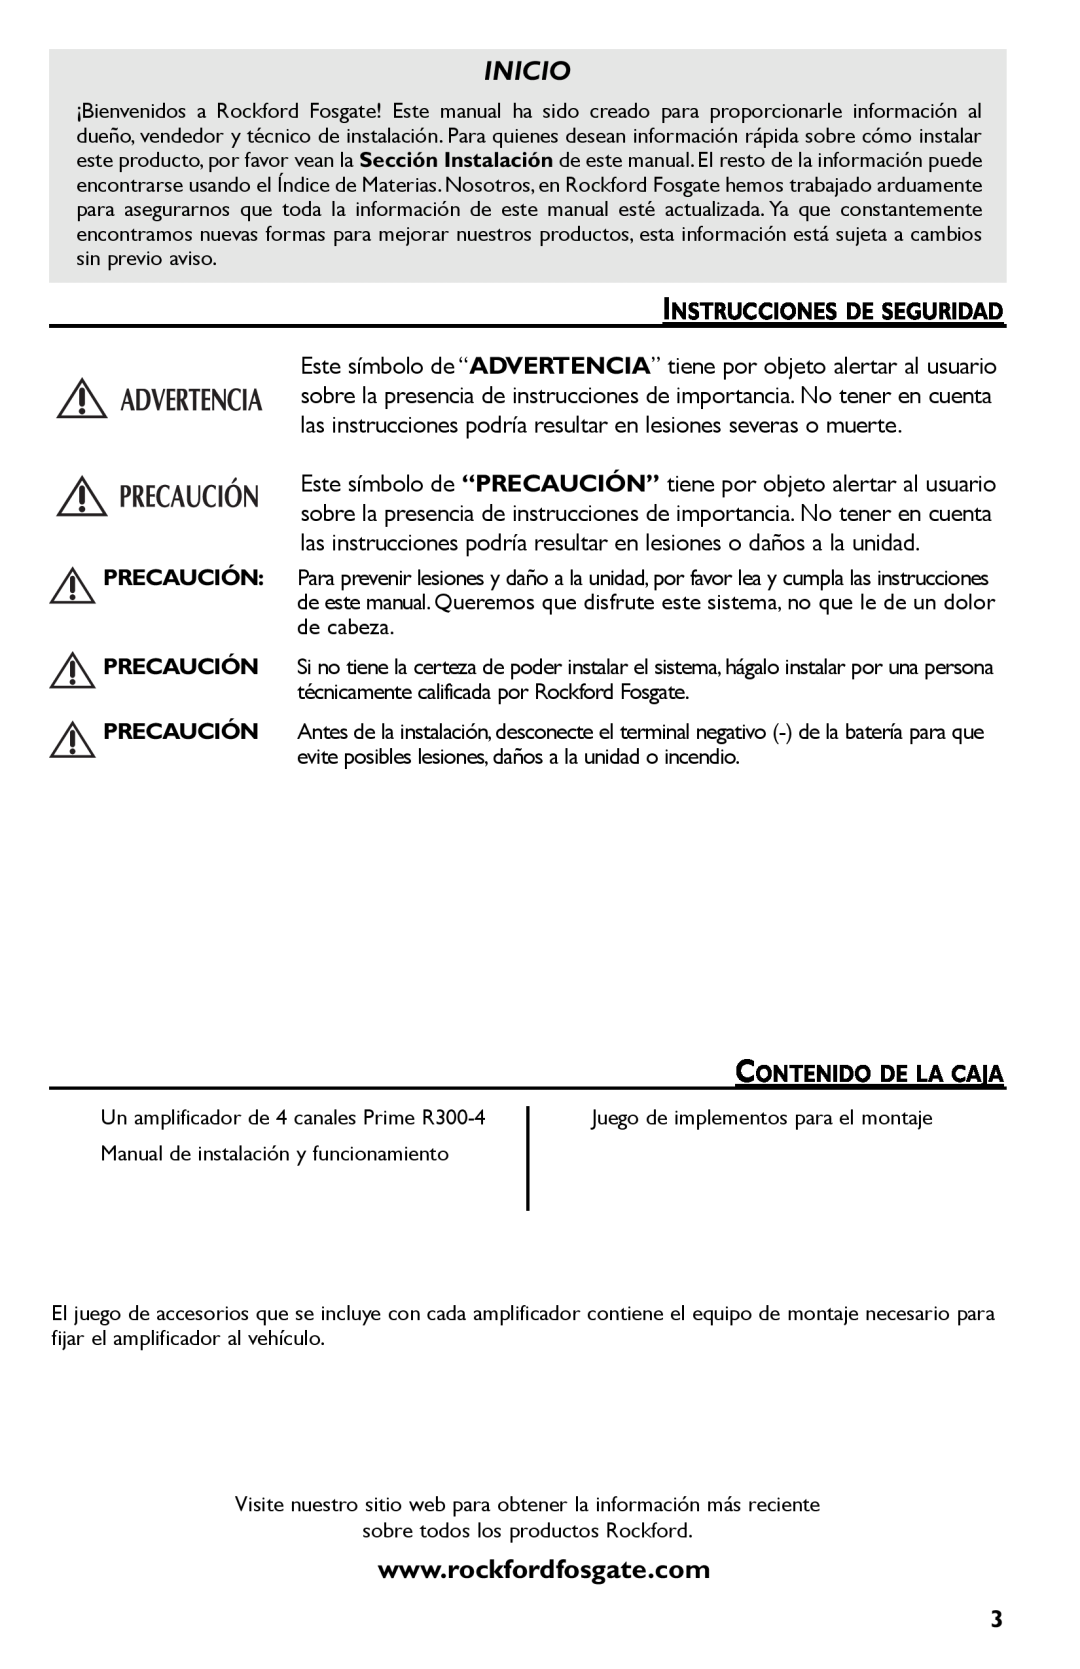 Rockford Fosgate R300-4 manual Inicio, Instrucciones De Seguridad, Contenido De La Caja 